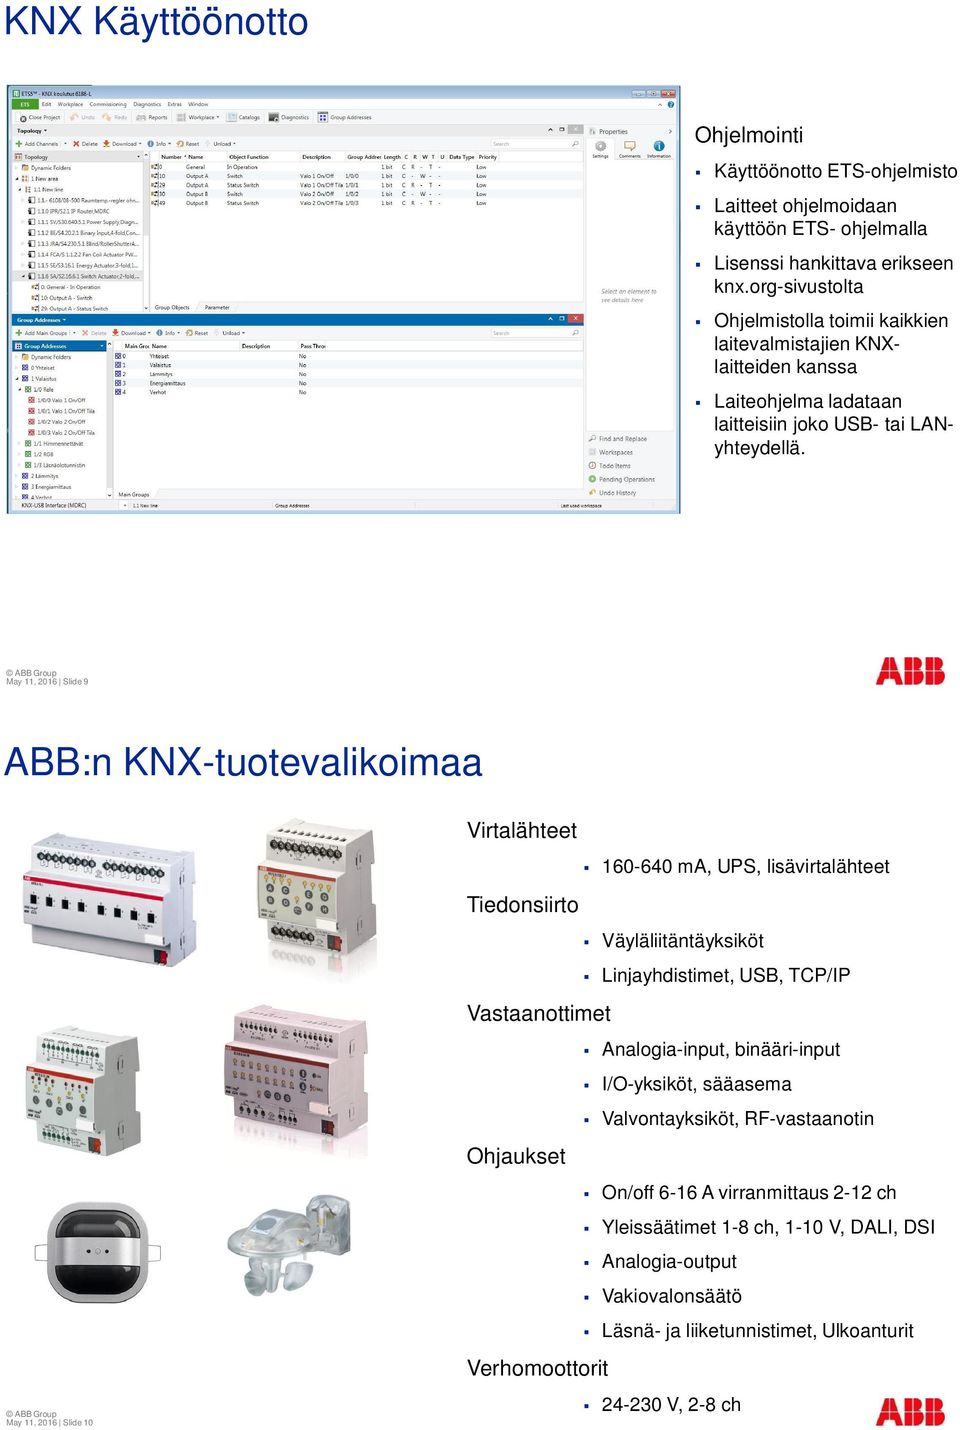 May 11, 2016 Slide 9 ABB:n KNX-tuotevalikoimaa May 11, 2016 Slide 10 Virtalähteet 160-640 ma, UPS, lisävirtalähteet Tiedonsiirto Väyläliitäntäyksiköt Linjayhdistimet, USB, TCP/IP